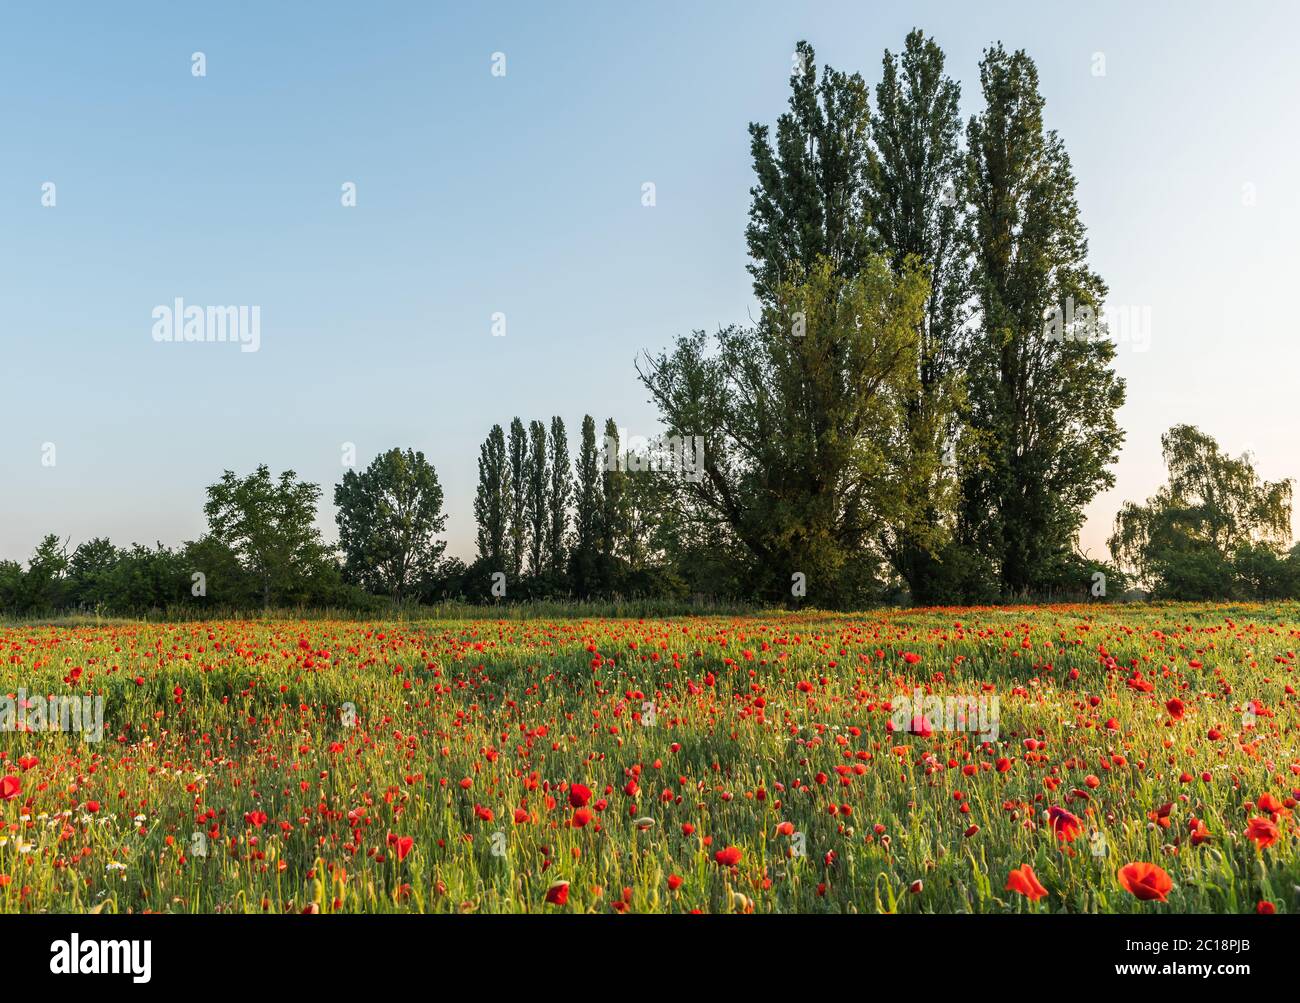 Blühendes rotes Mohnfeld mit Bäumen im Hintergrund, Hassloch, Rheinland-Pfalz, Deutschland Stockfoto